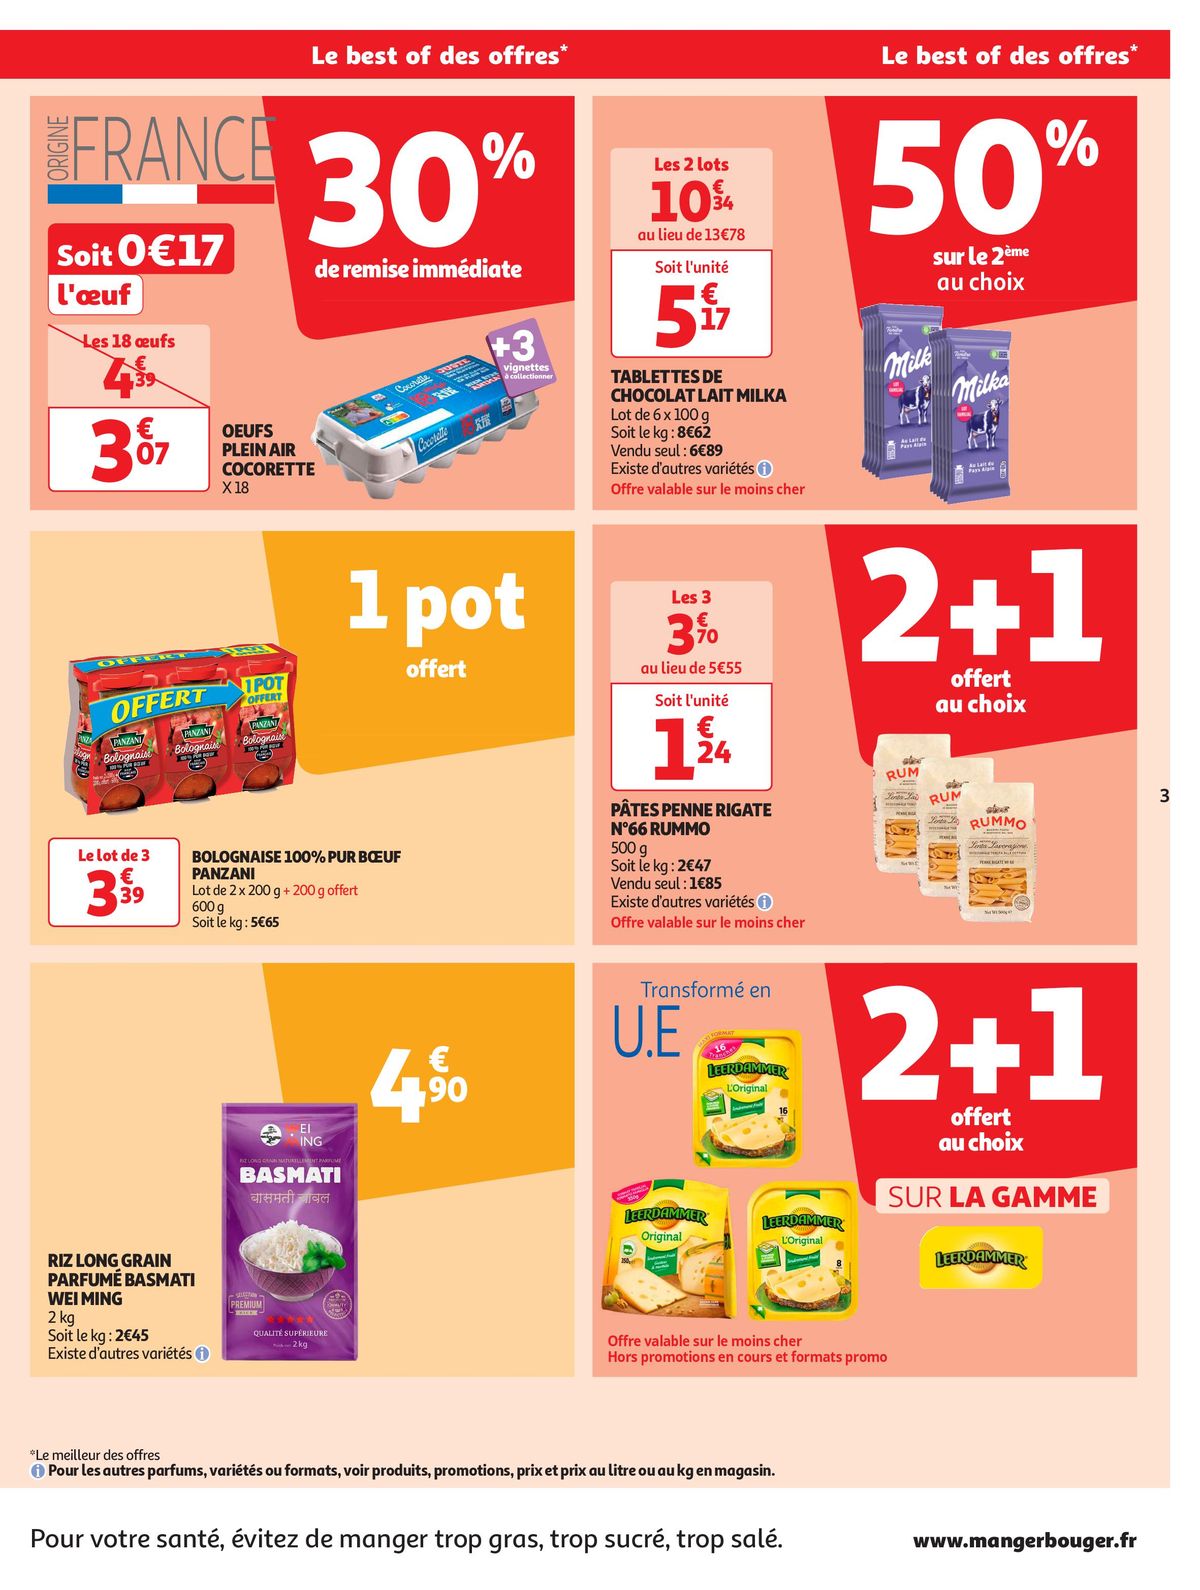 Catalogue Format XXL à prix XXS dans votre supermarché, page 00003